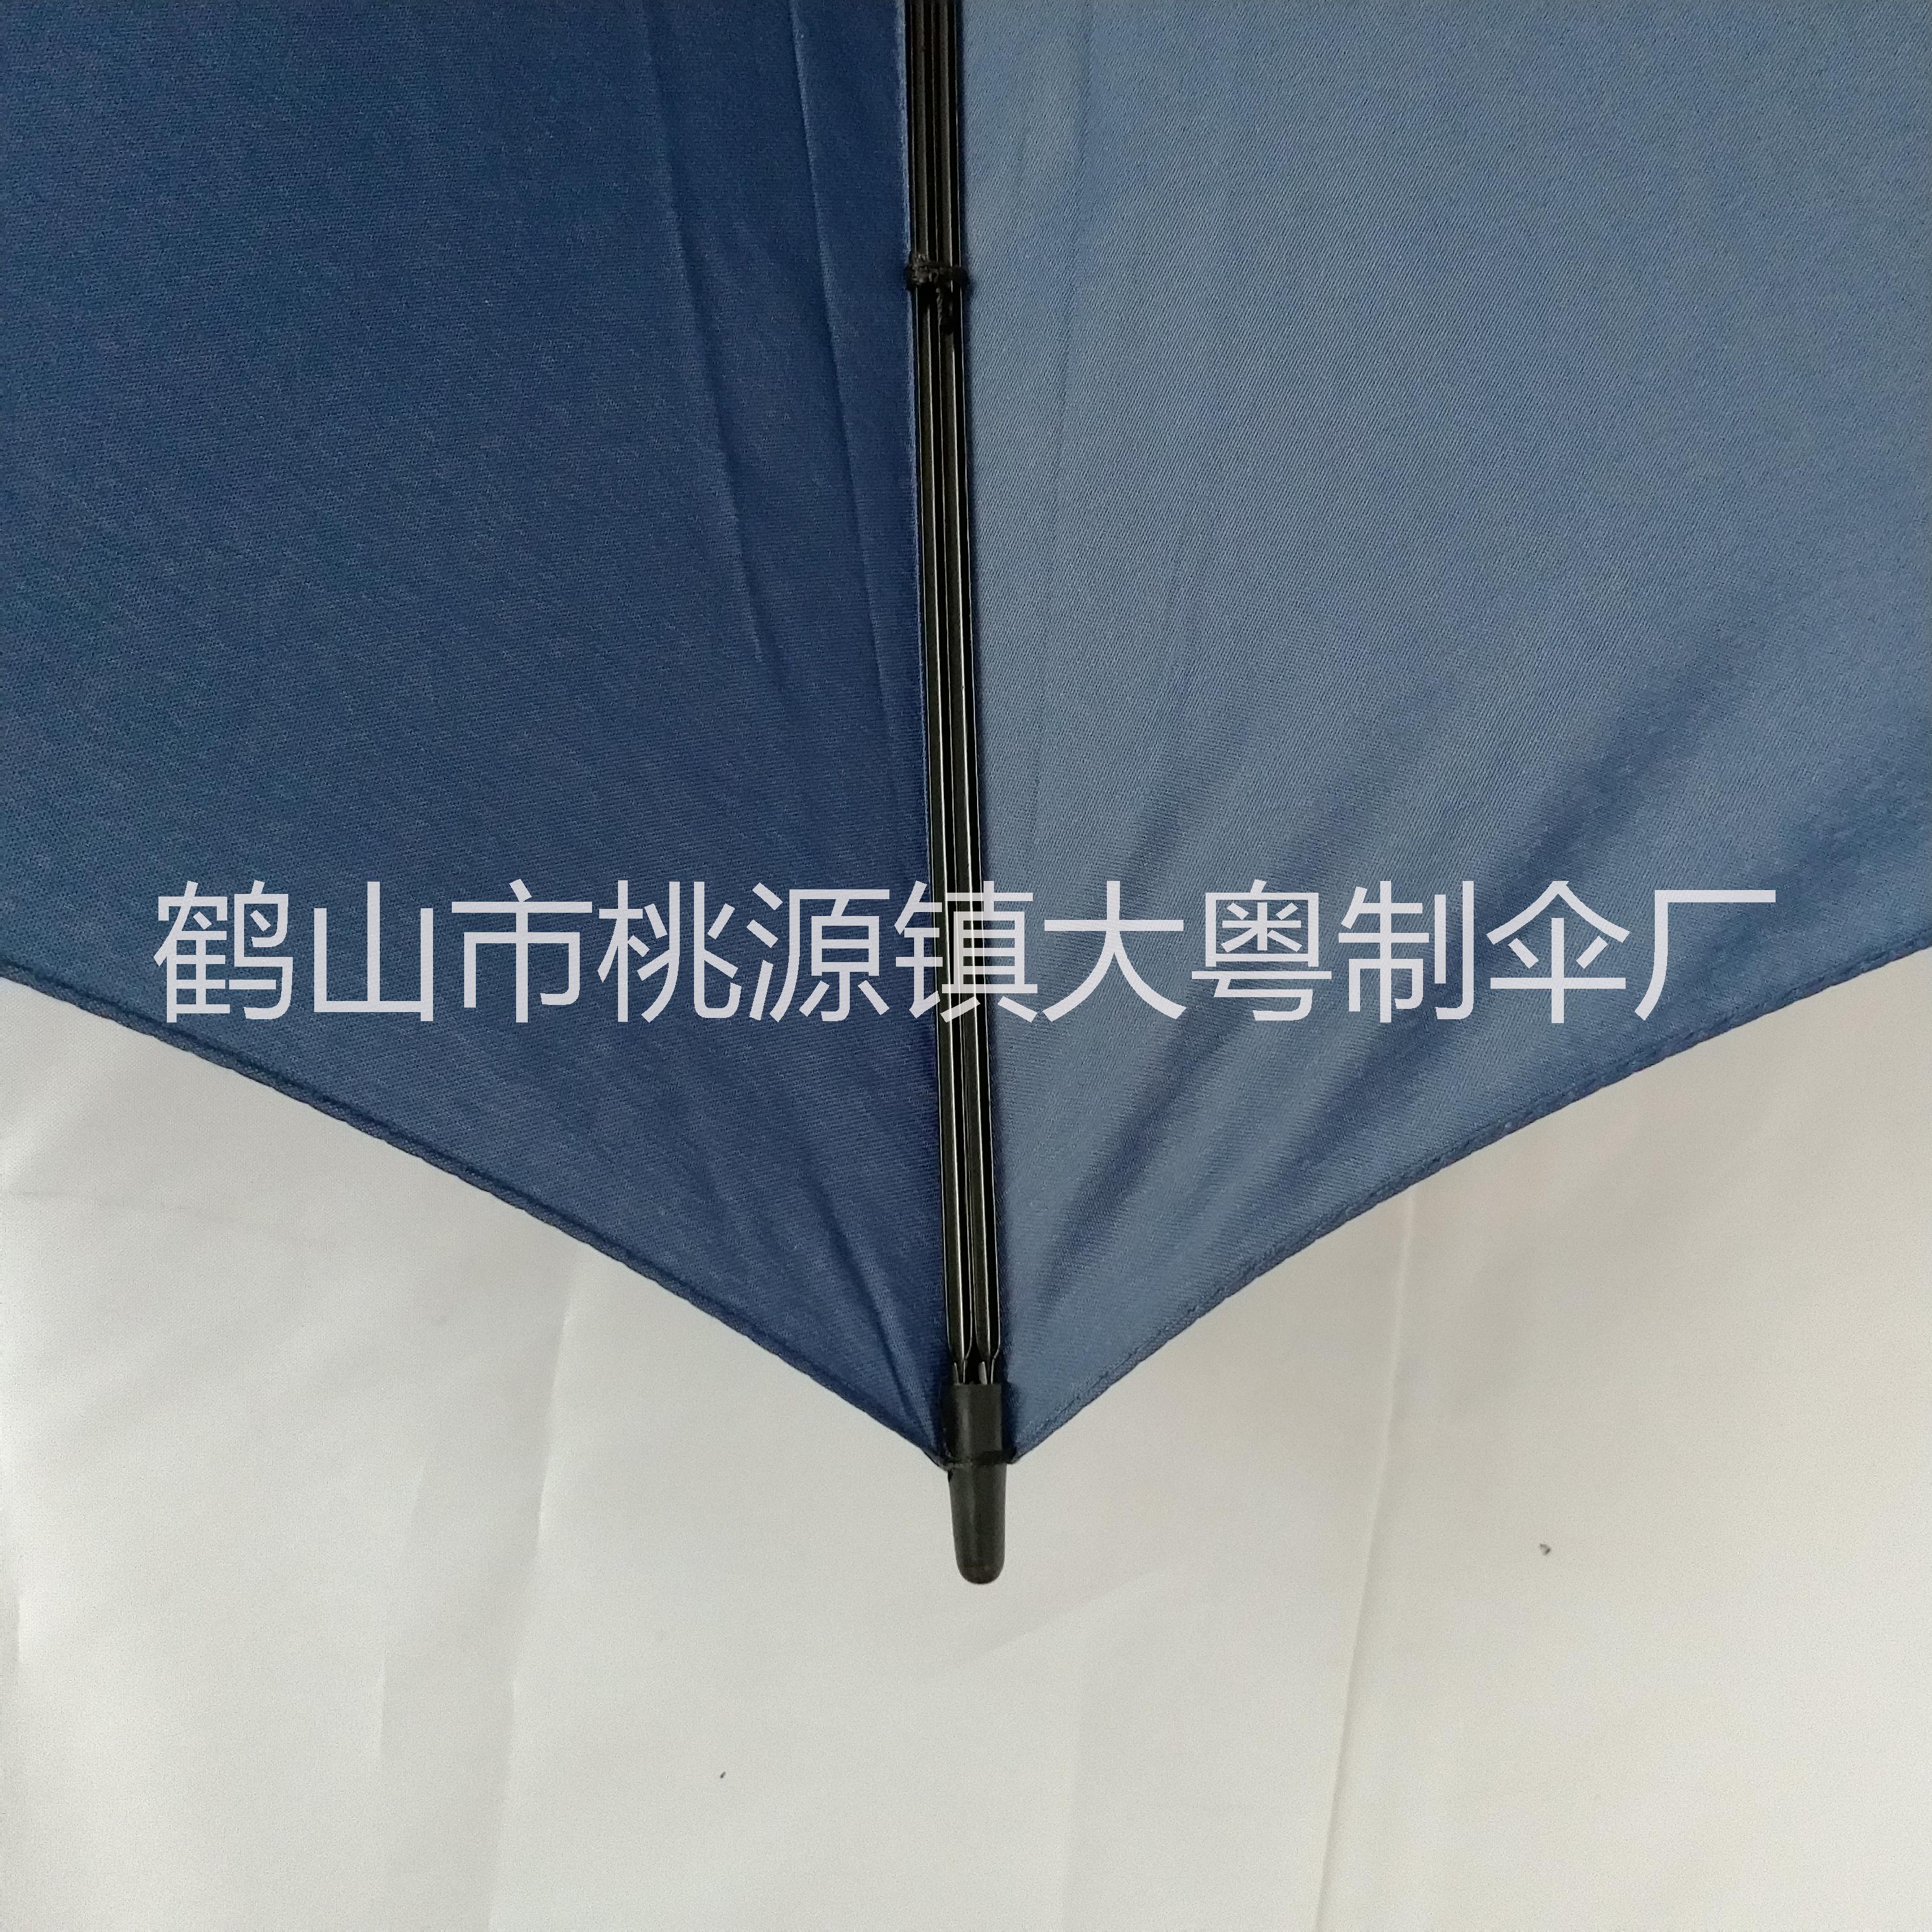 雨伞定制 供应各种广告雨伞定制 礼品伞制作批发 广告伞定制LOGO 全国直接发货